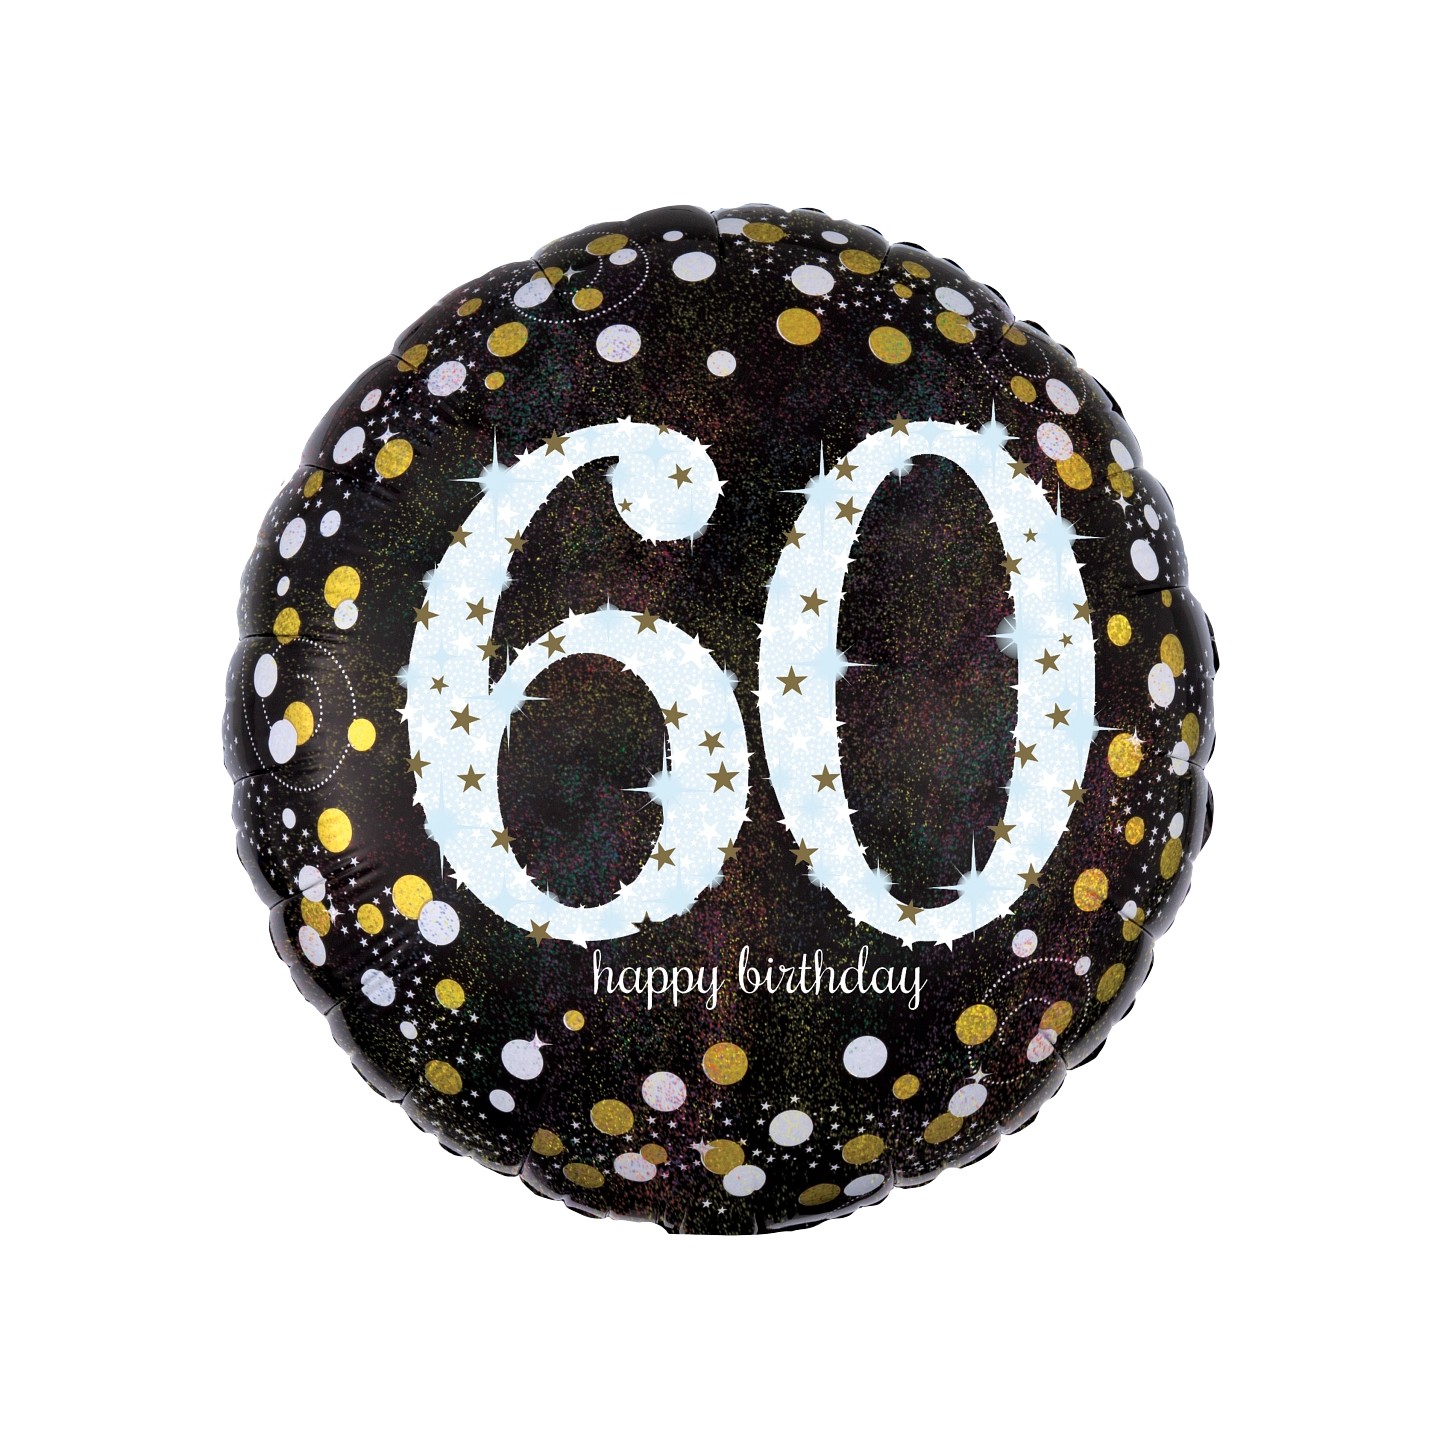 Folieballon verjaardag sparkling 60 jaar